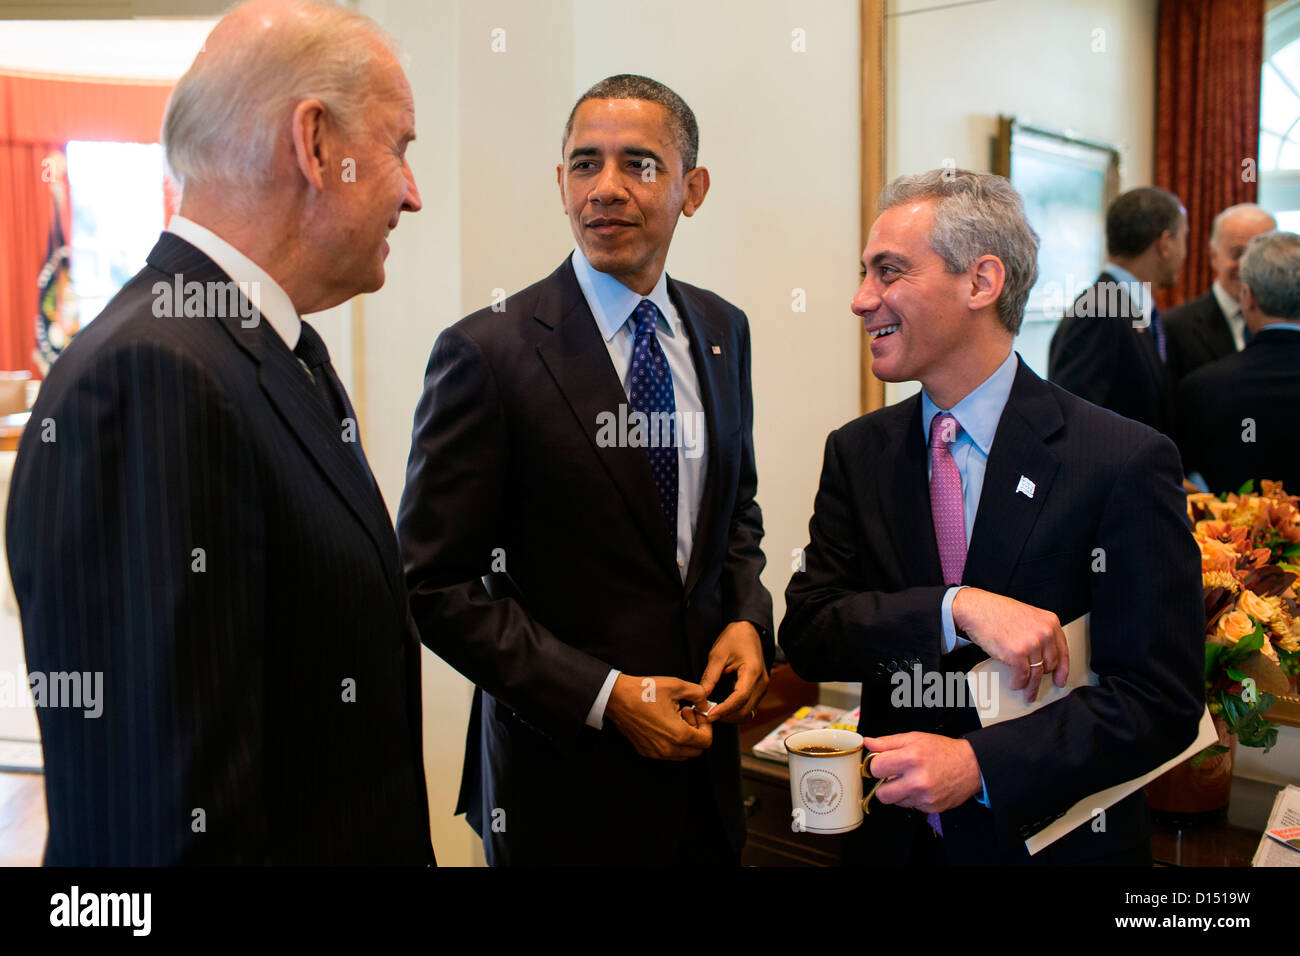 Le président américain Barack Obama et le Vice-président Joe Biden parle le maire de Chicago Rahm Emanuel dans l'avant-Bureau Ovale le 16 novembre 2012 à Washington, DC. Banque D'Images